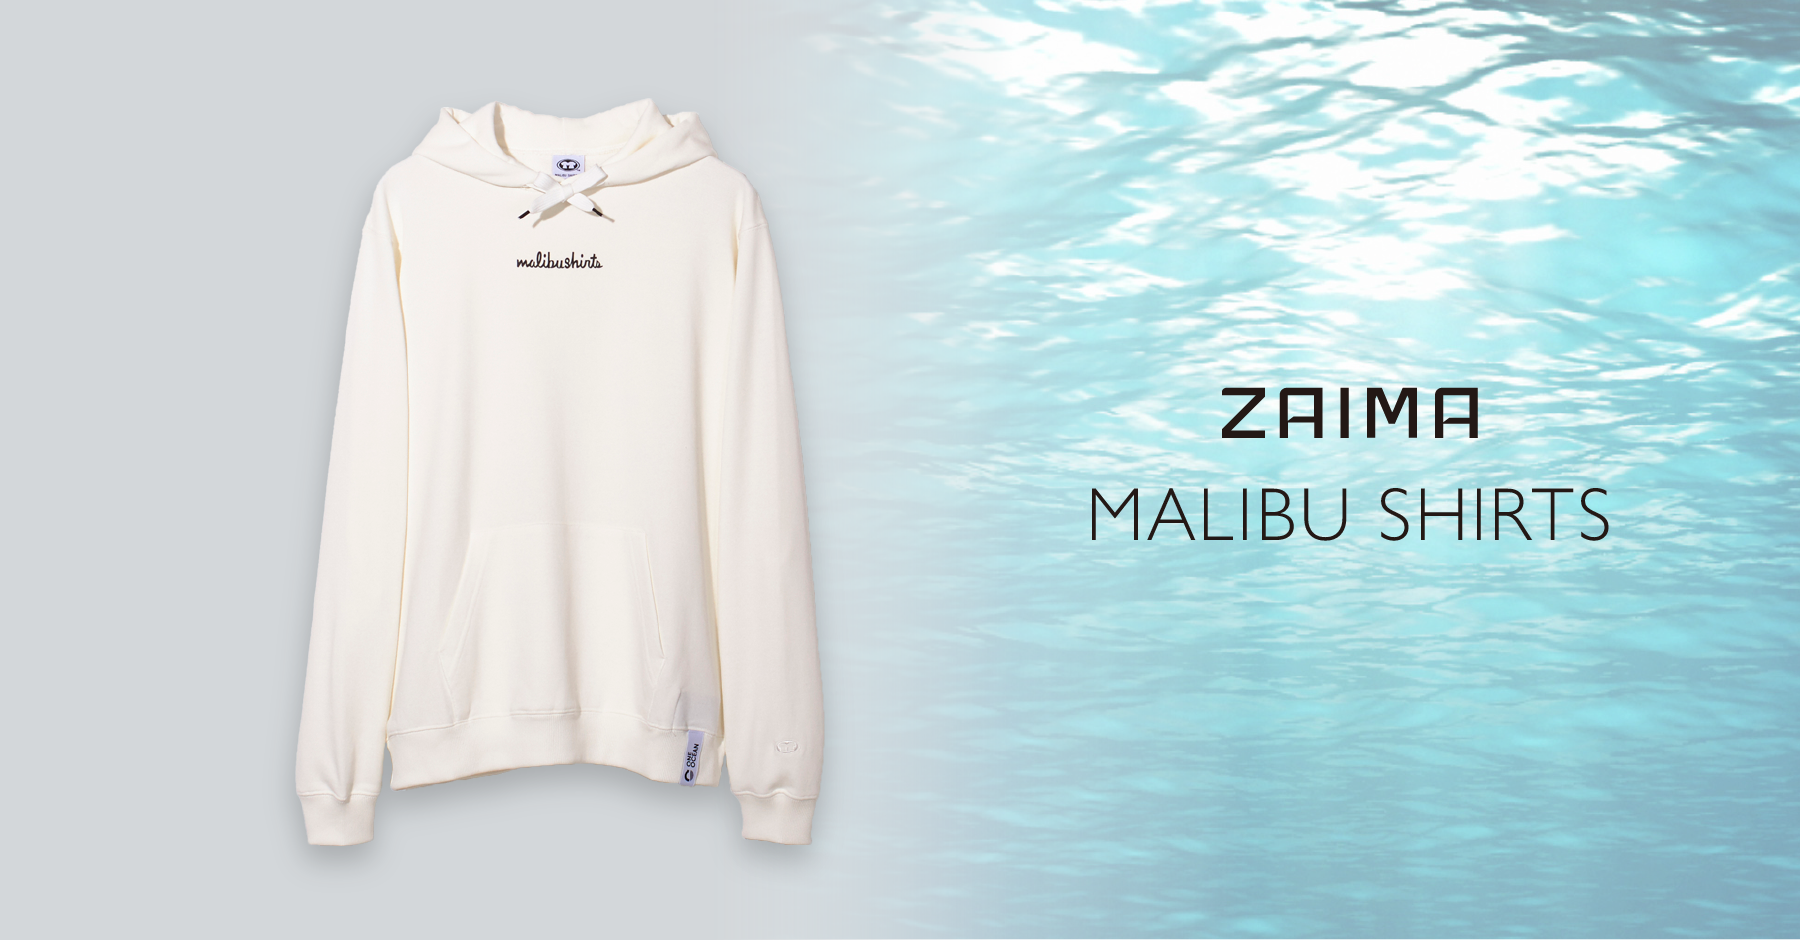 Tbmが運営するecサイト Zaima 海洋ごみから再生されたポリエステルを原料に使用したファッションブランド Malibu Shirts の販売を開始 Tbmのプレスリリース